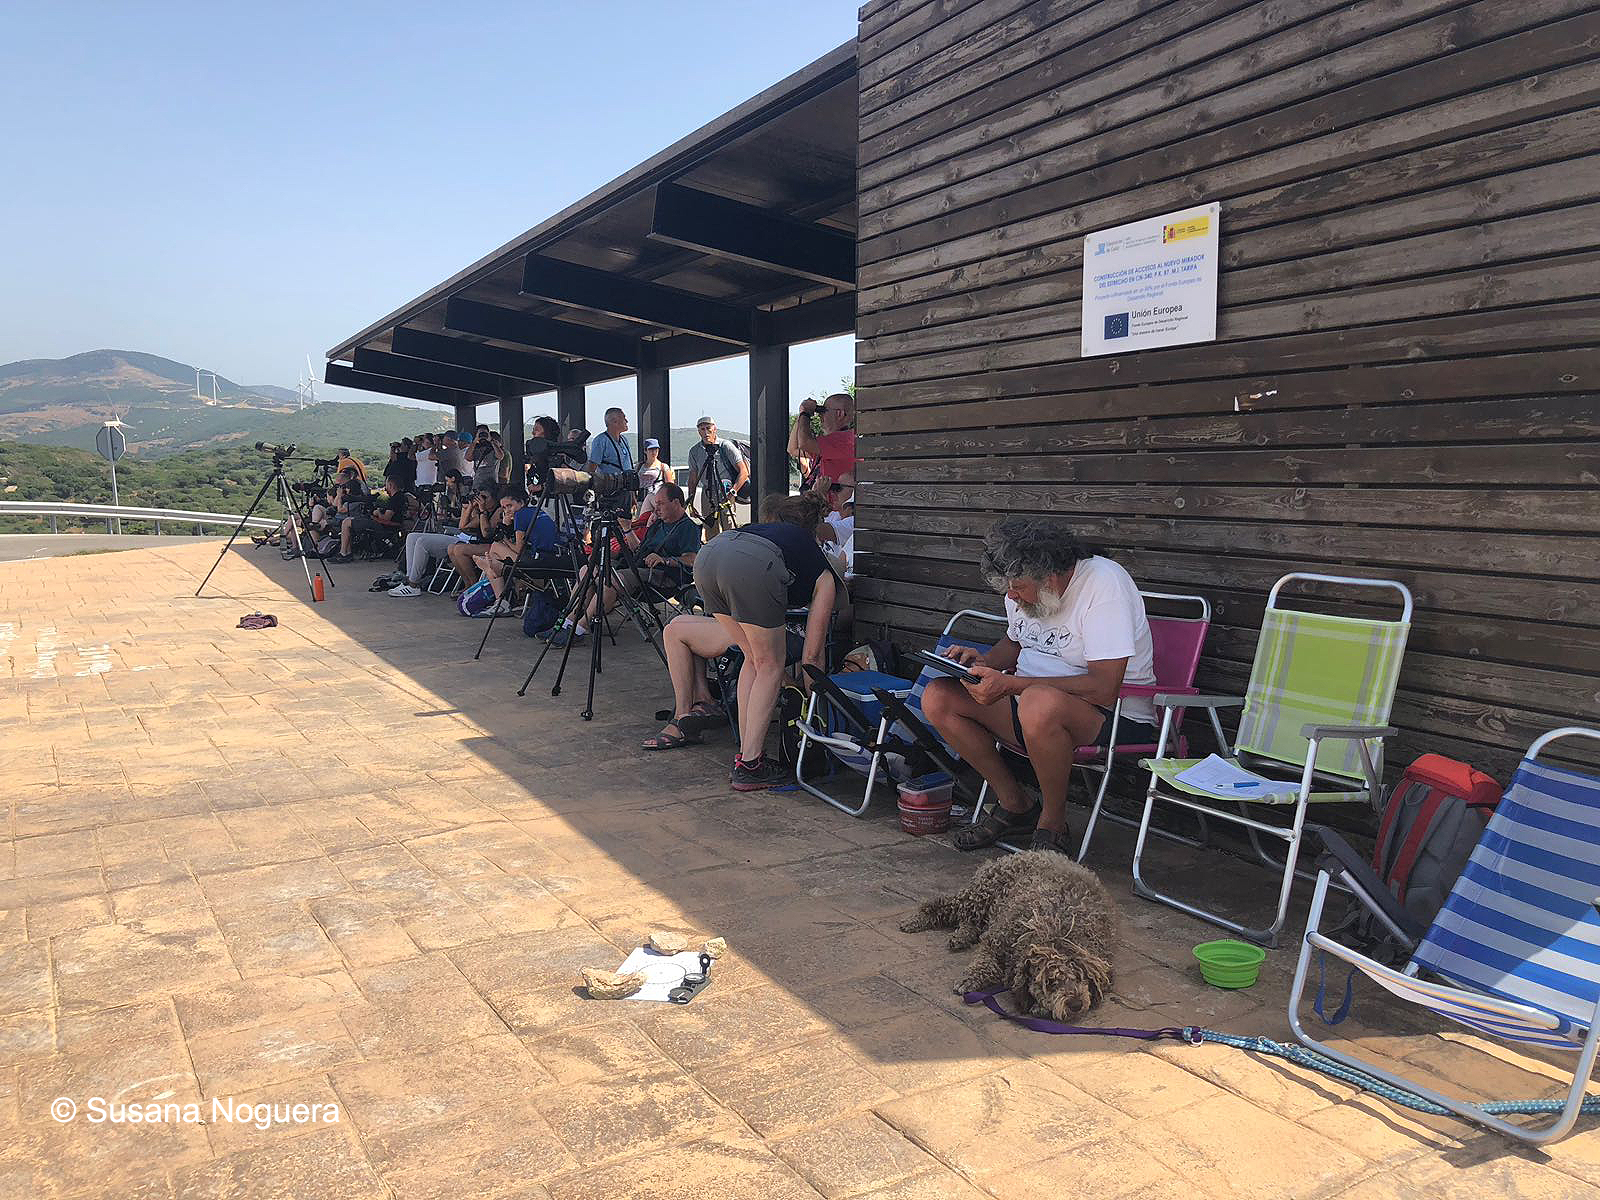 Voluntarios y turistas ornitológicos se mezclan en los observatorios de Tarifa. Imagen: Susana Noguera